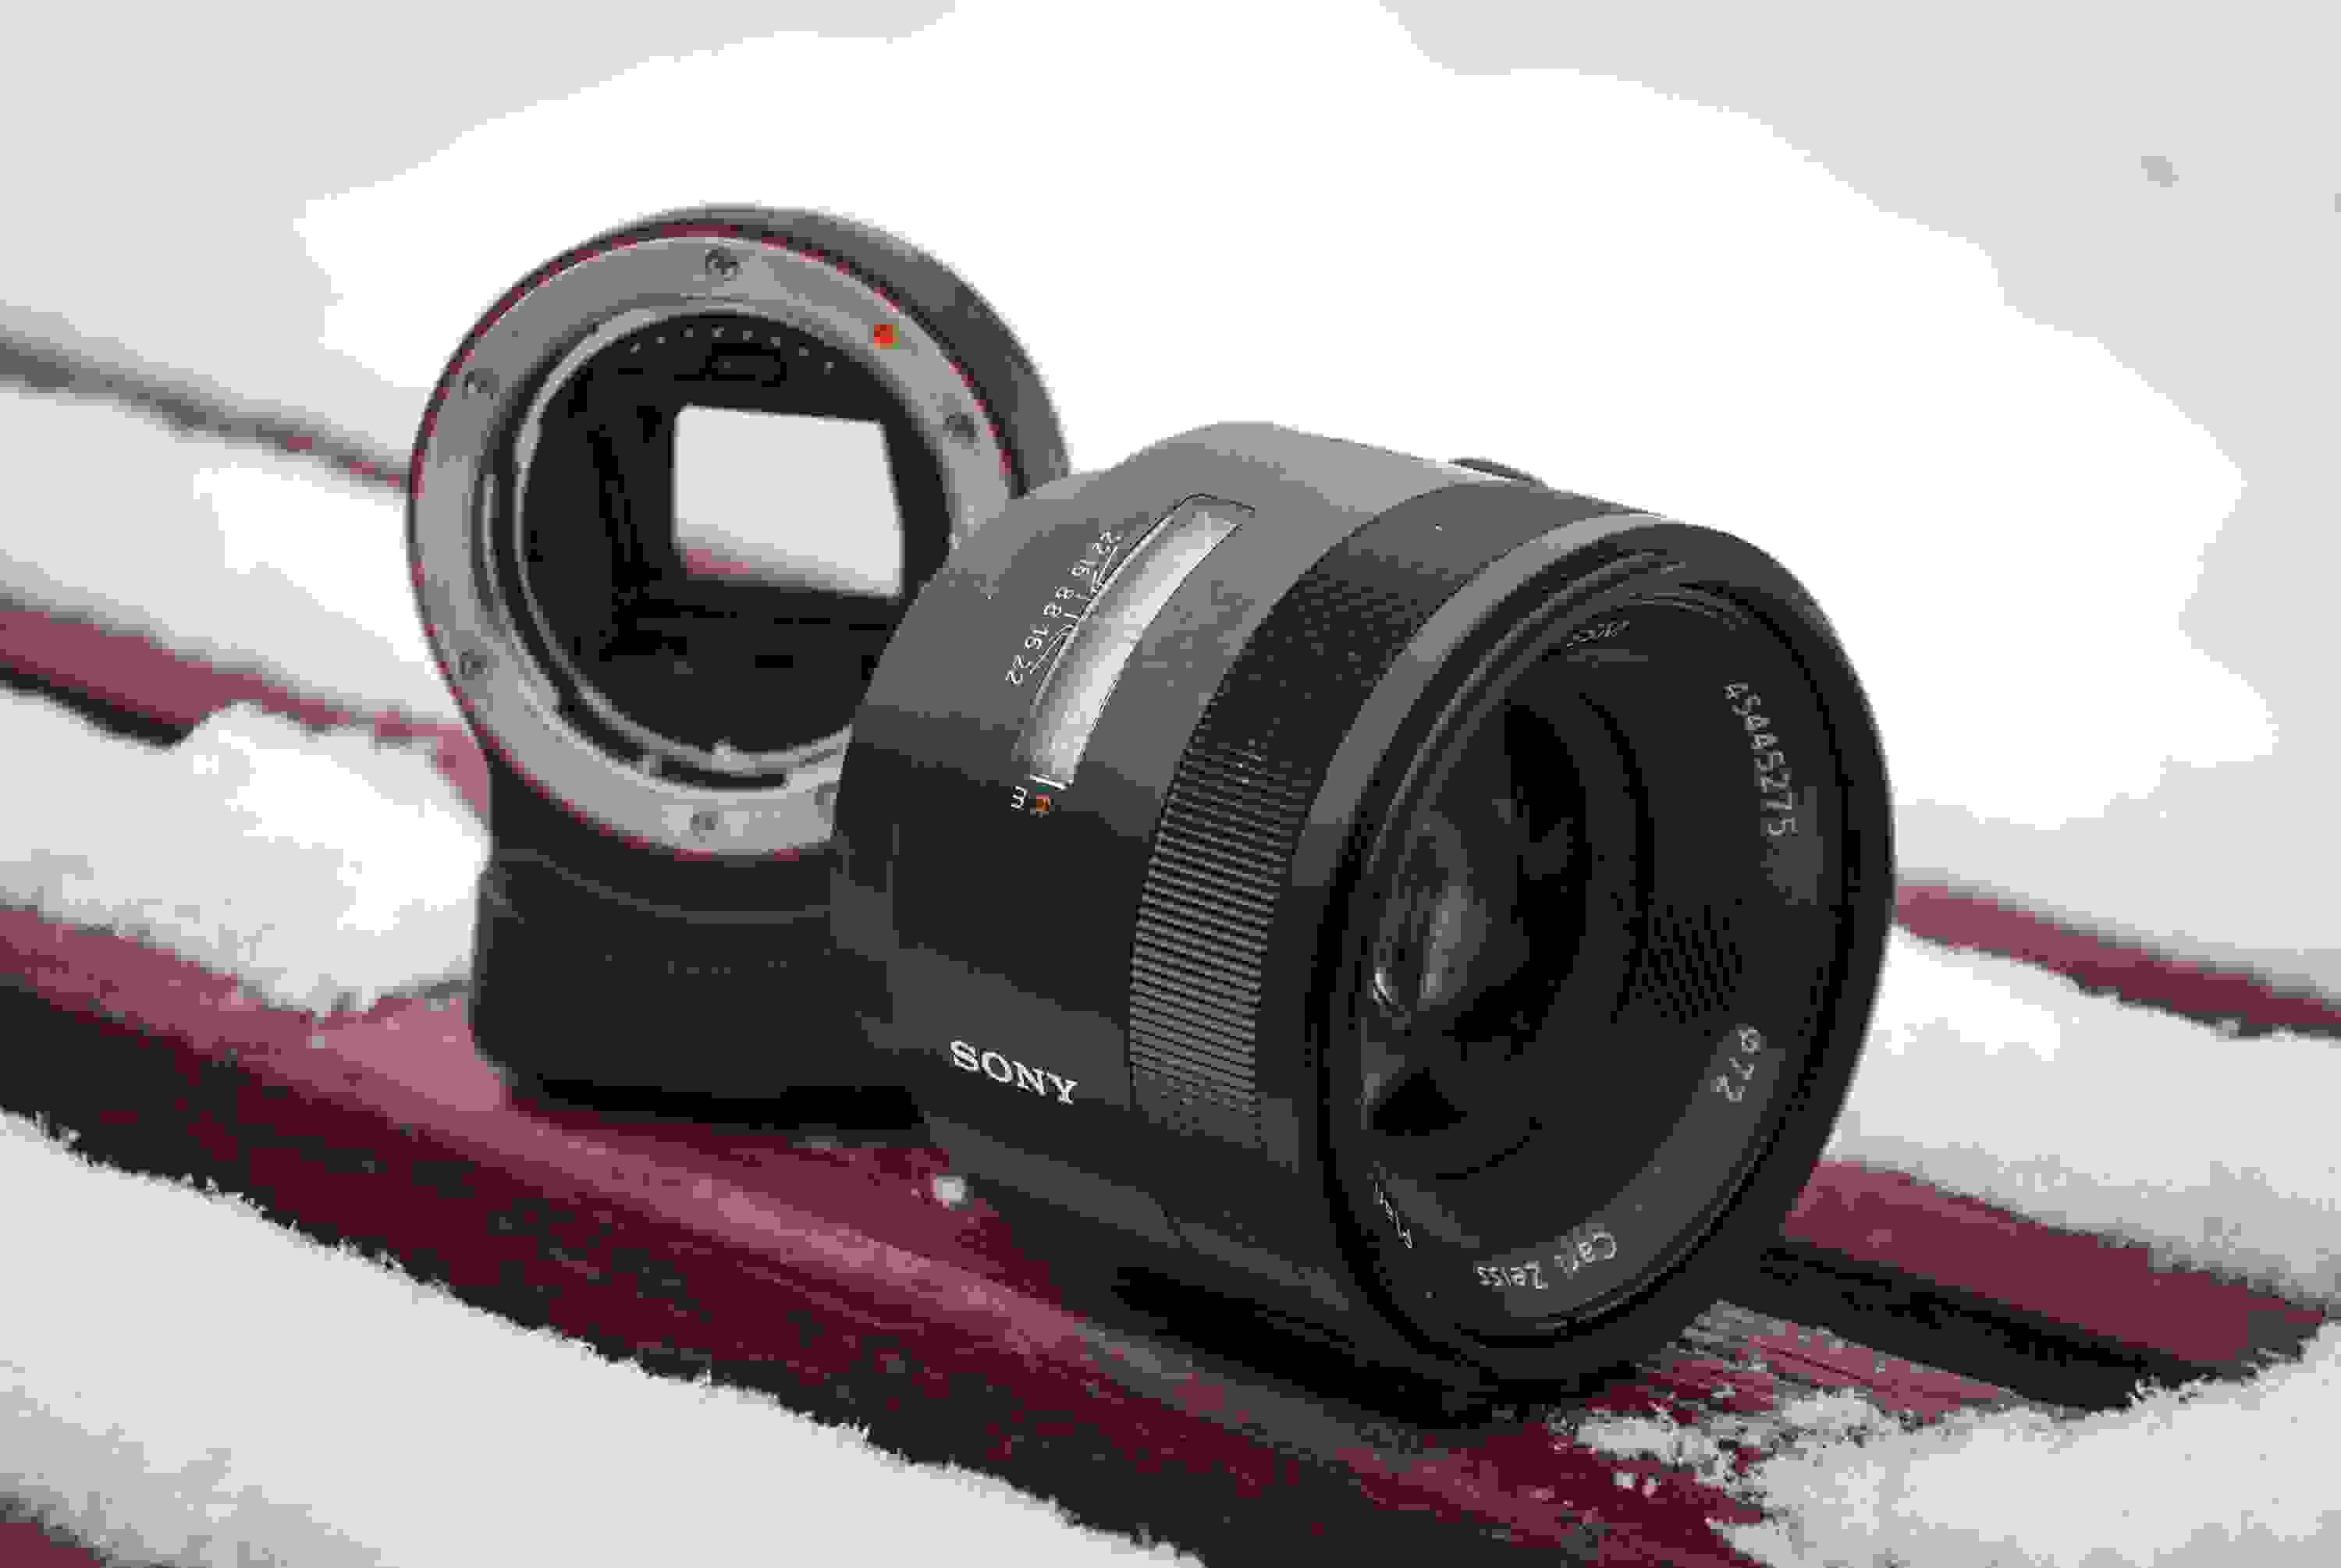 Обзор Sony Carl Zeiss Planar T* 50mm f1.4 ZA SSM. Светосильный полнокадровый «полтинник» премиум-класса, установленный через переходник на беззеркалку